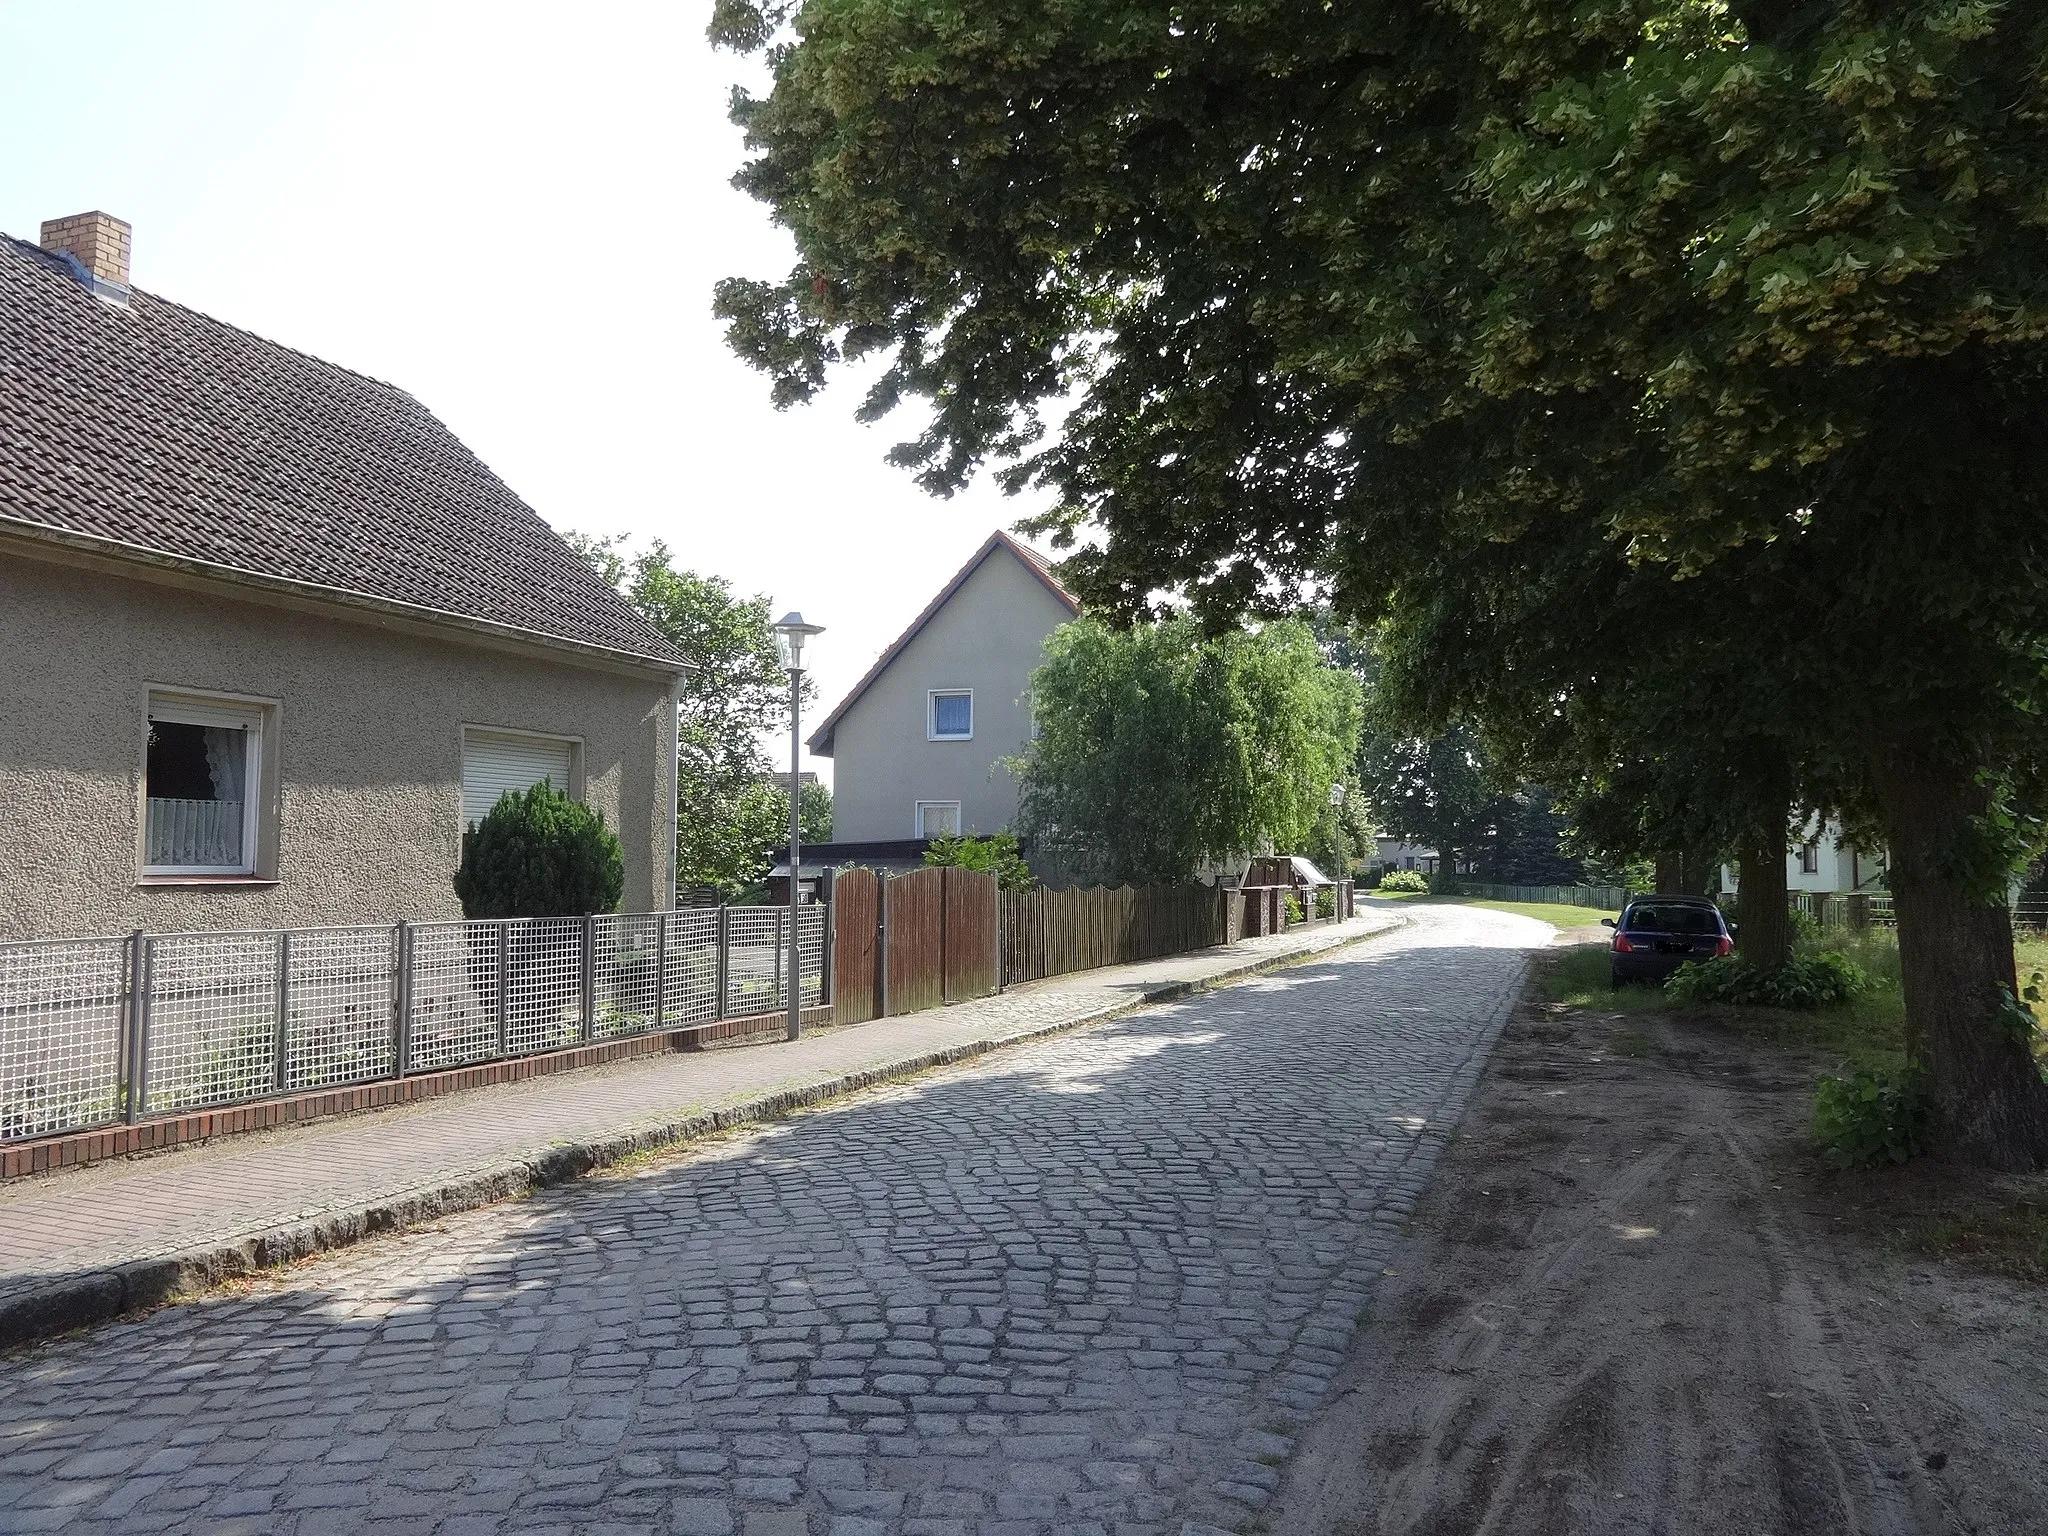 Photo showing: Impression aus Freidorf, ein Ortsteil der Gemeinde Halbe im Landkreis Dahme-Spreewald in Brandenburg